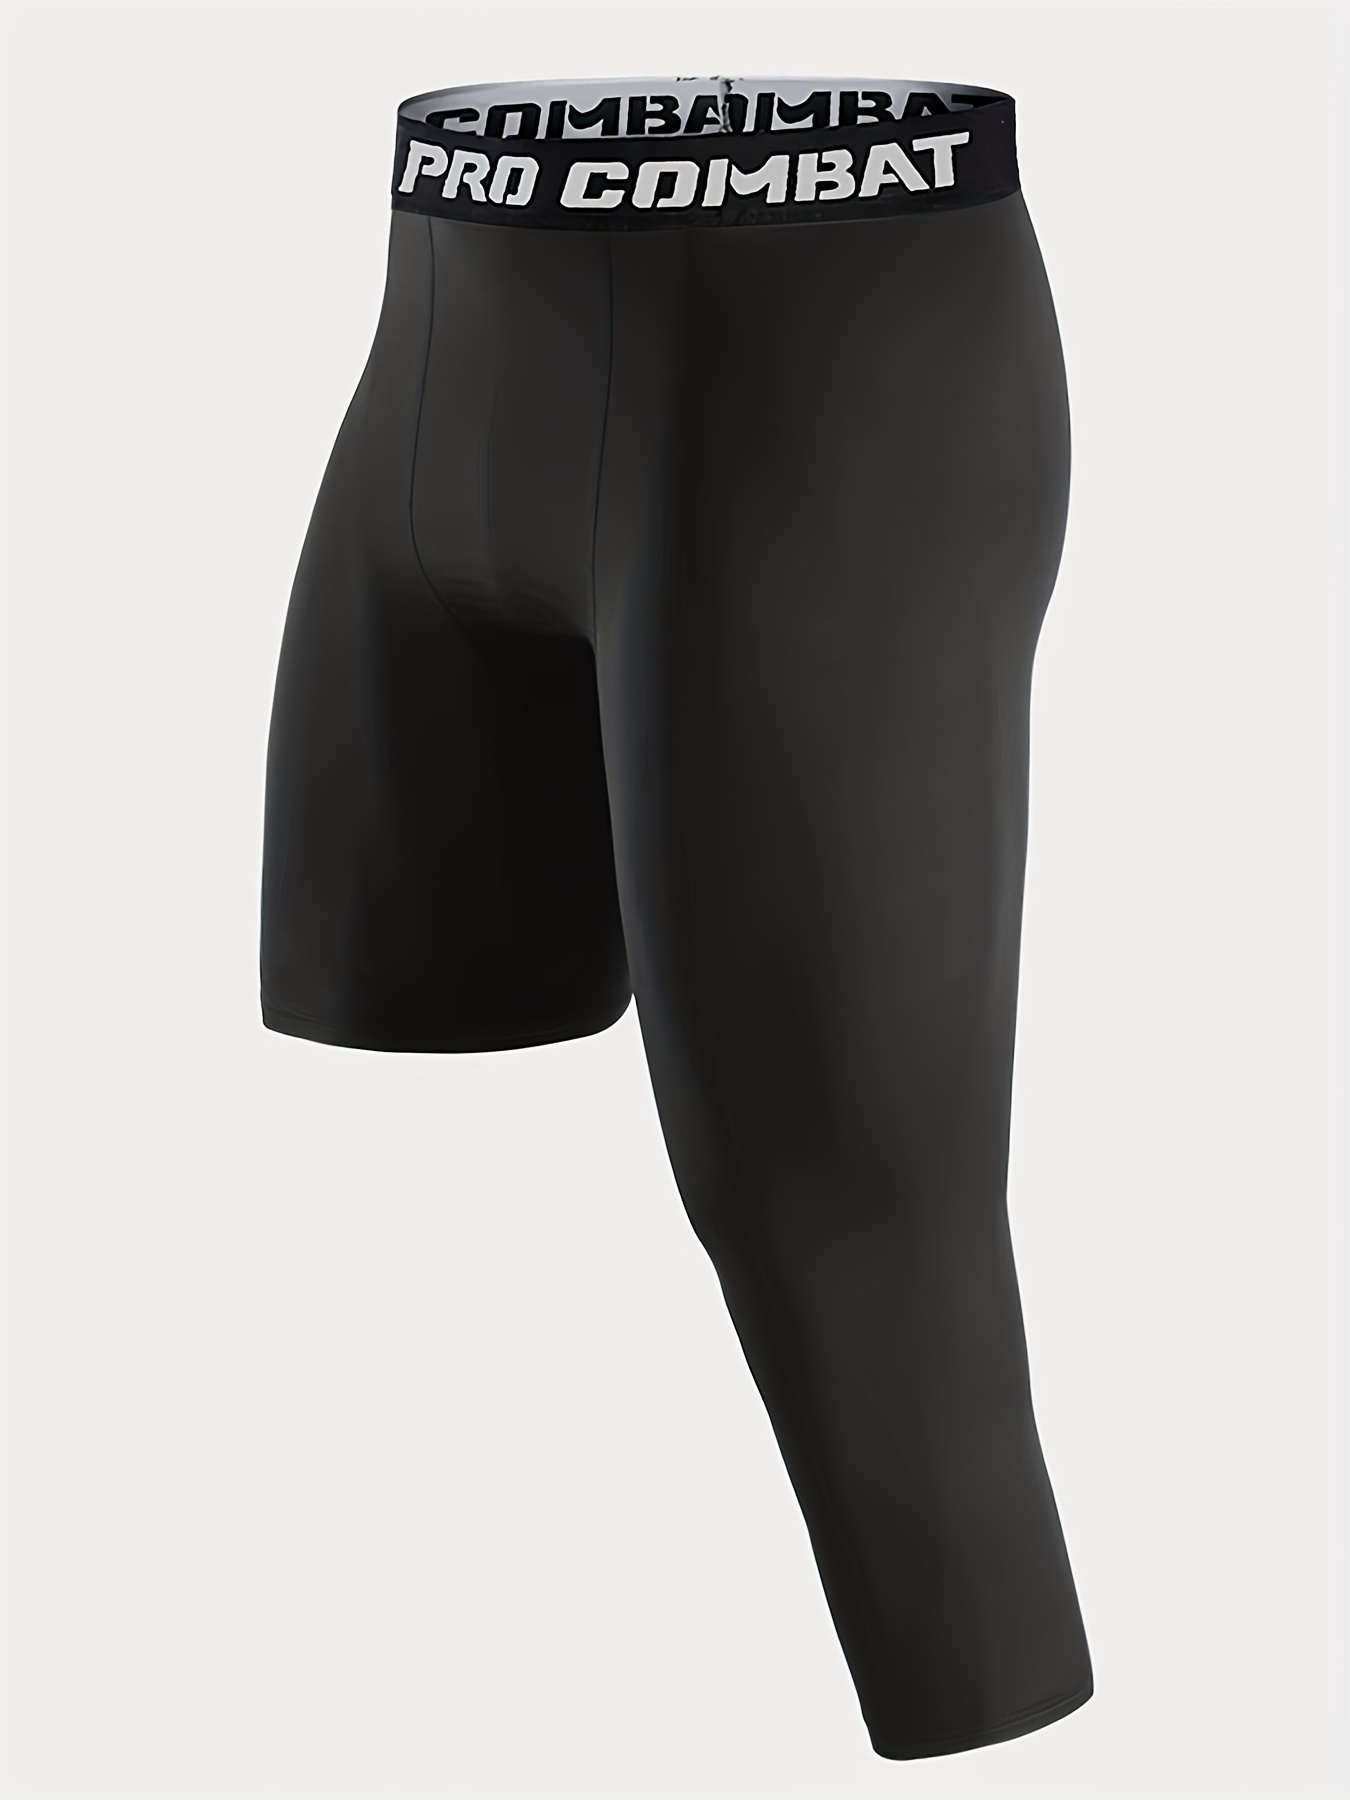 Blaward Pantalones de compresión para hombre, mallas de una pierna 3/4,  leggings de capa base atlética para correr, yoga, baloncesto, paquete de 2